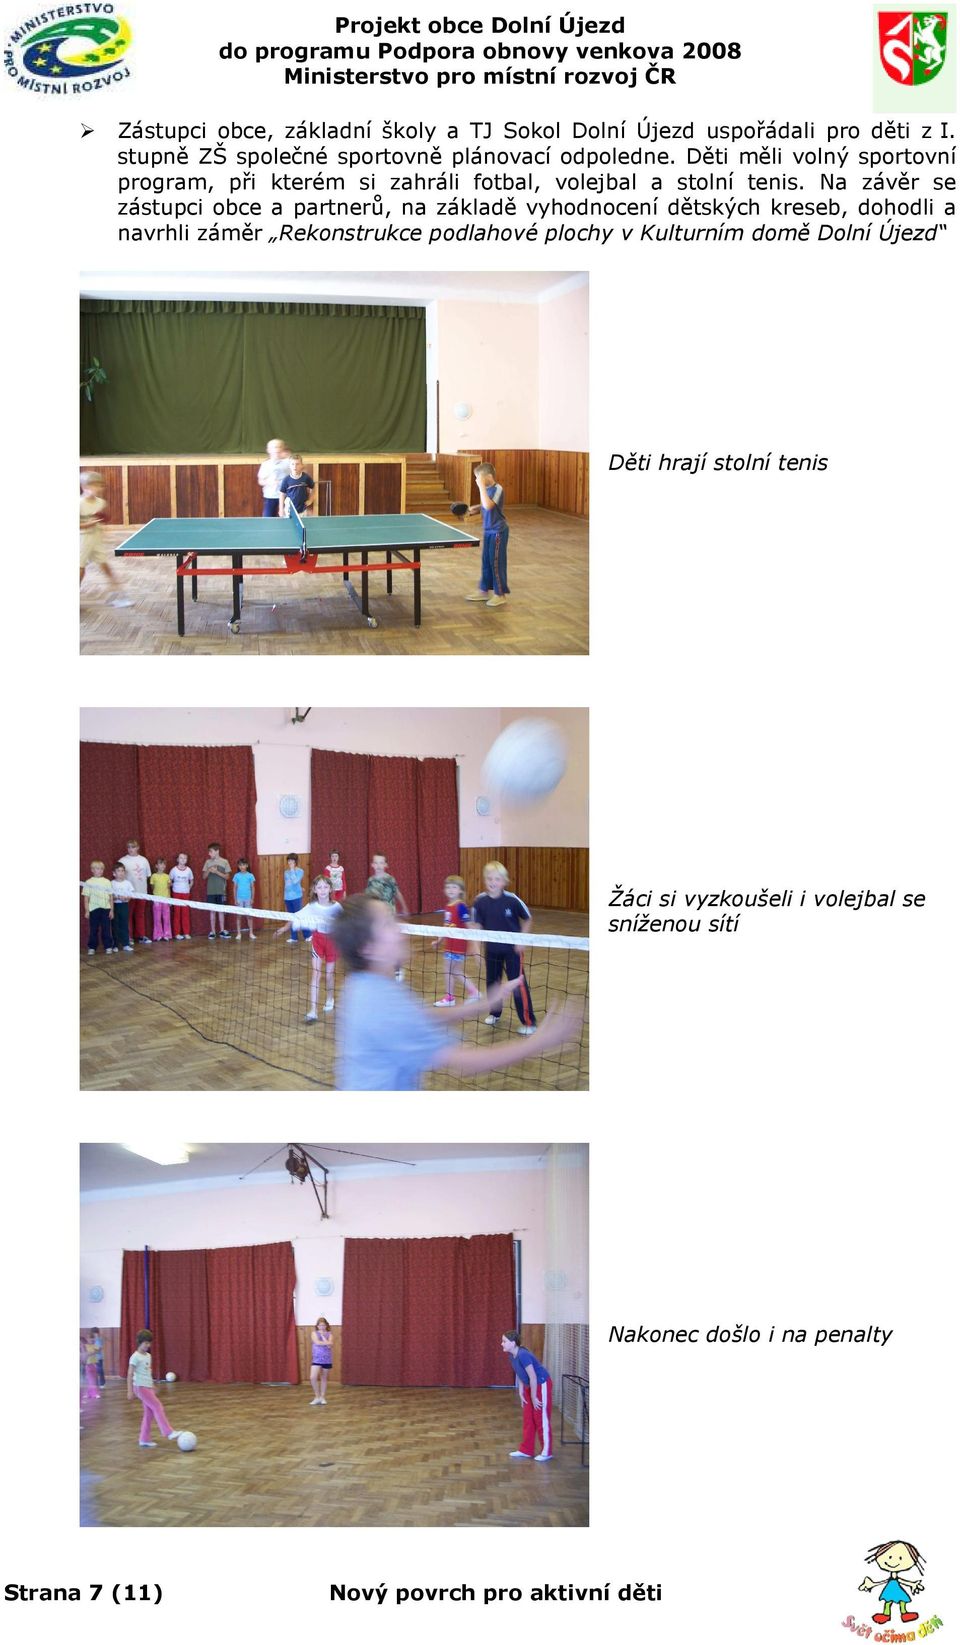 Děti měli volný sportovní program, při kterém si zahráli fotbal, volejbal a stolní tenis.